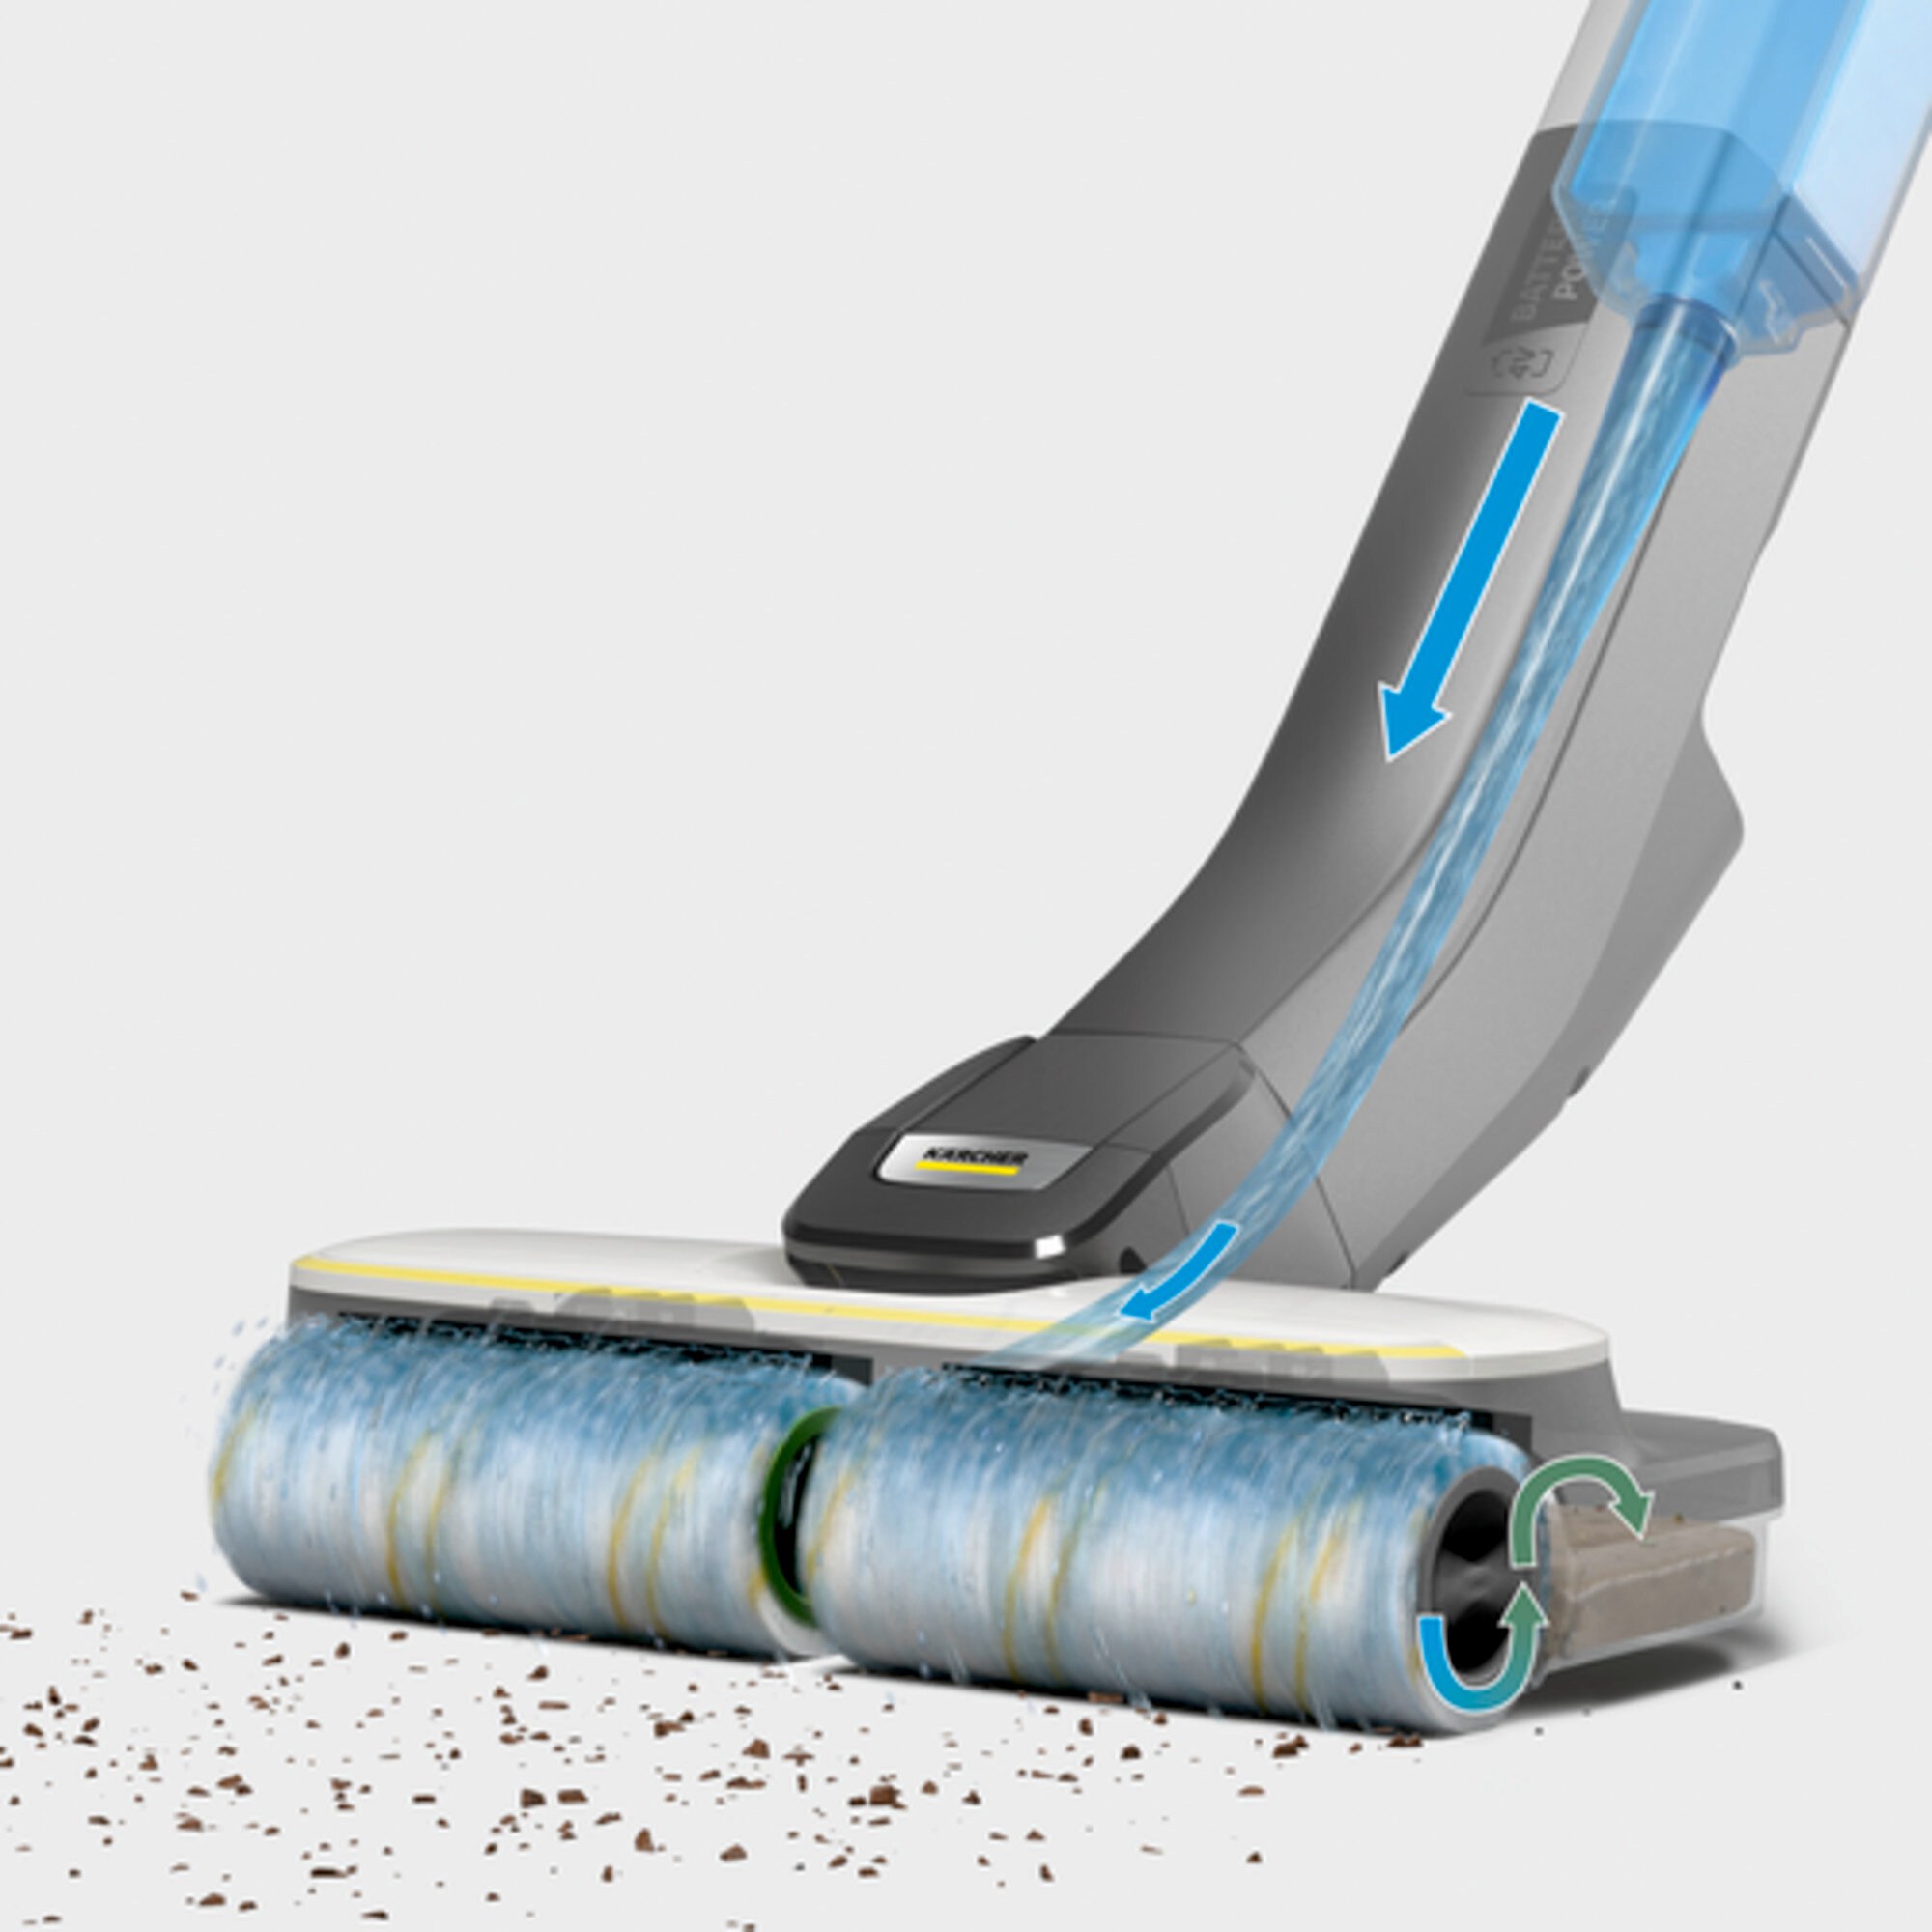 Thiết bị làm sạch sàn cứng FC 4-4 Battery: Lau sạch hơn 20%* so với cây lau nhà và thuận tiện hơn nhiều